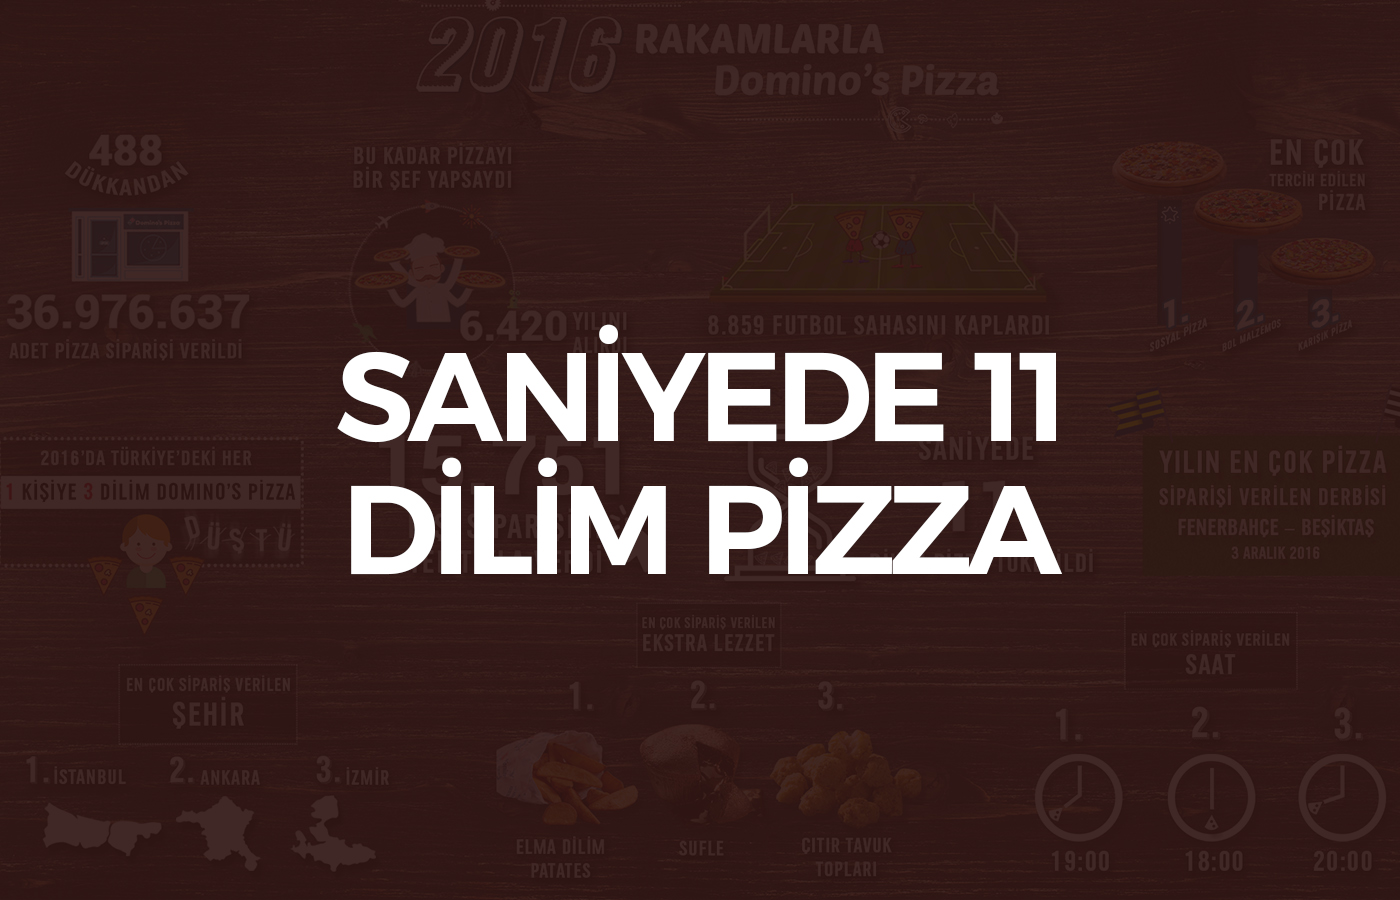 Türkiye’de Saniyede 11 Dilim Pizza Yeniyor